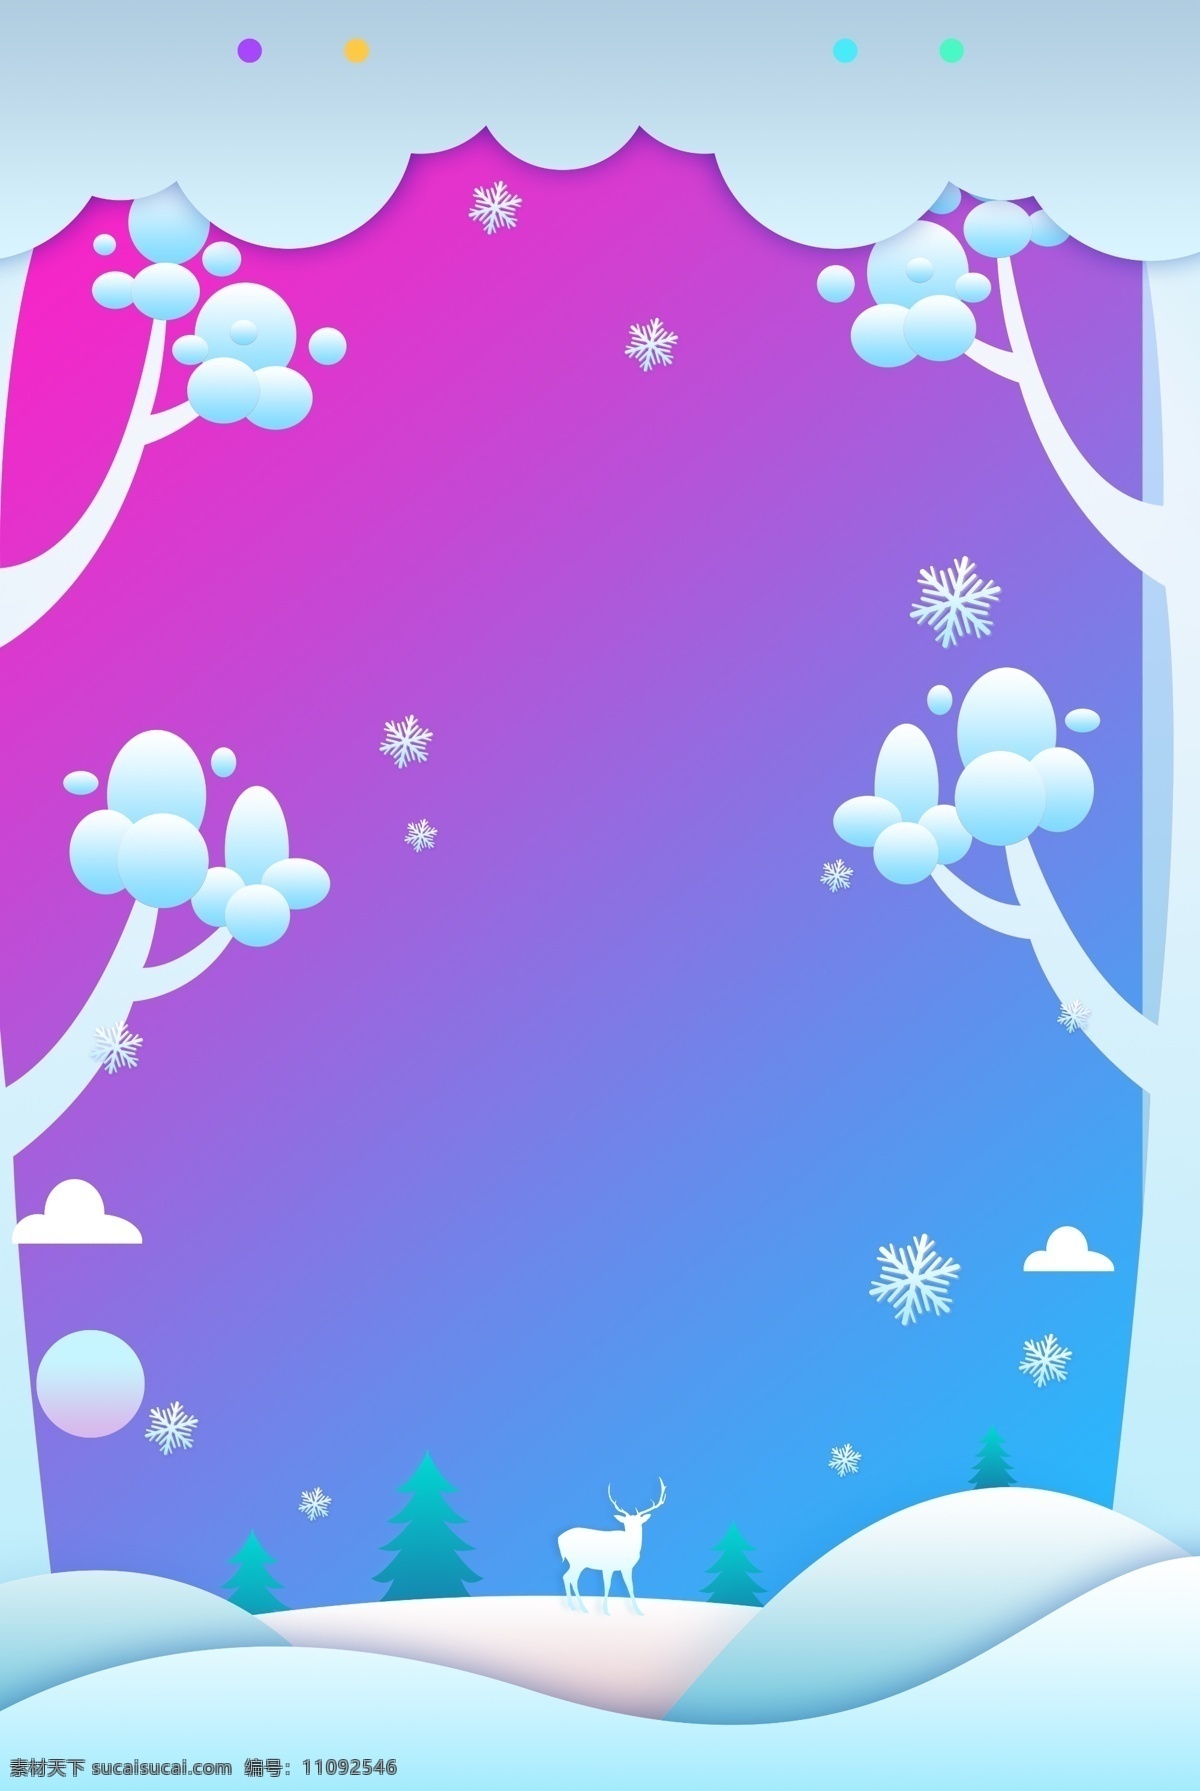 雪人 紫色 卡通 广告 背景 图 冬季 树枝 雪景 中国传统节气 冬至 远山 手绘 冬装上市 广告背景